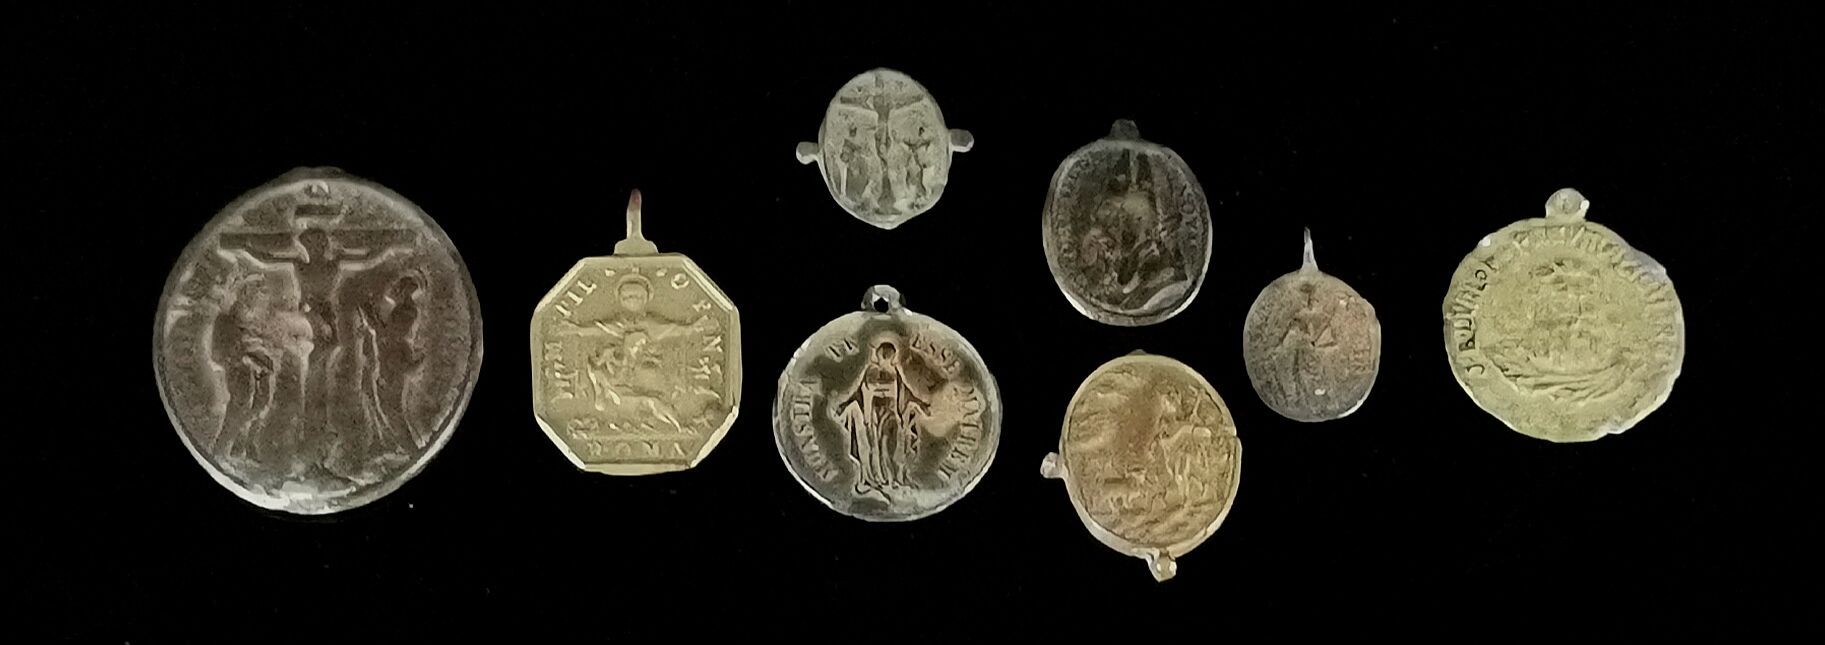 Null 收集了8枚古董朝圣者奖牌，以青铜和黄铜制成，其中一枚较大，装饰有受难场景。

高_2,5厘米至4,6厘米